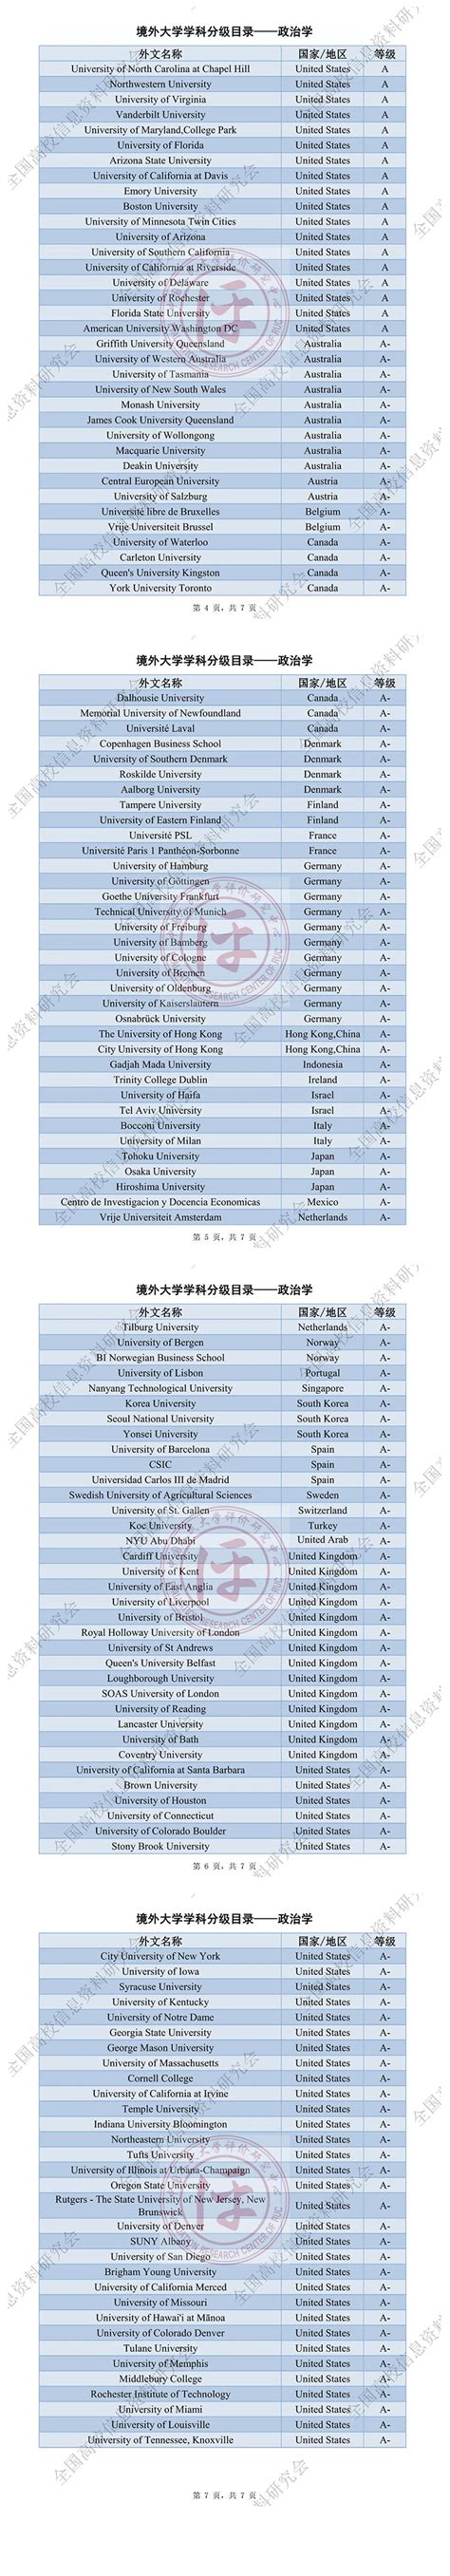 境外大学学科分级目录 (人文社会科学) : 图书与信息管理A级 —中国教育在线